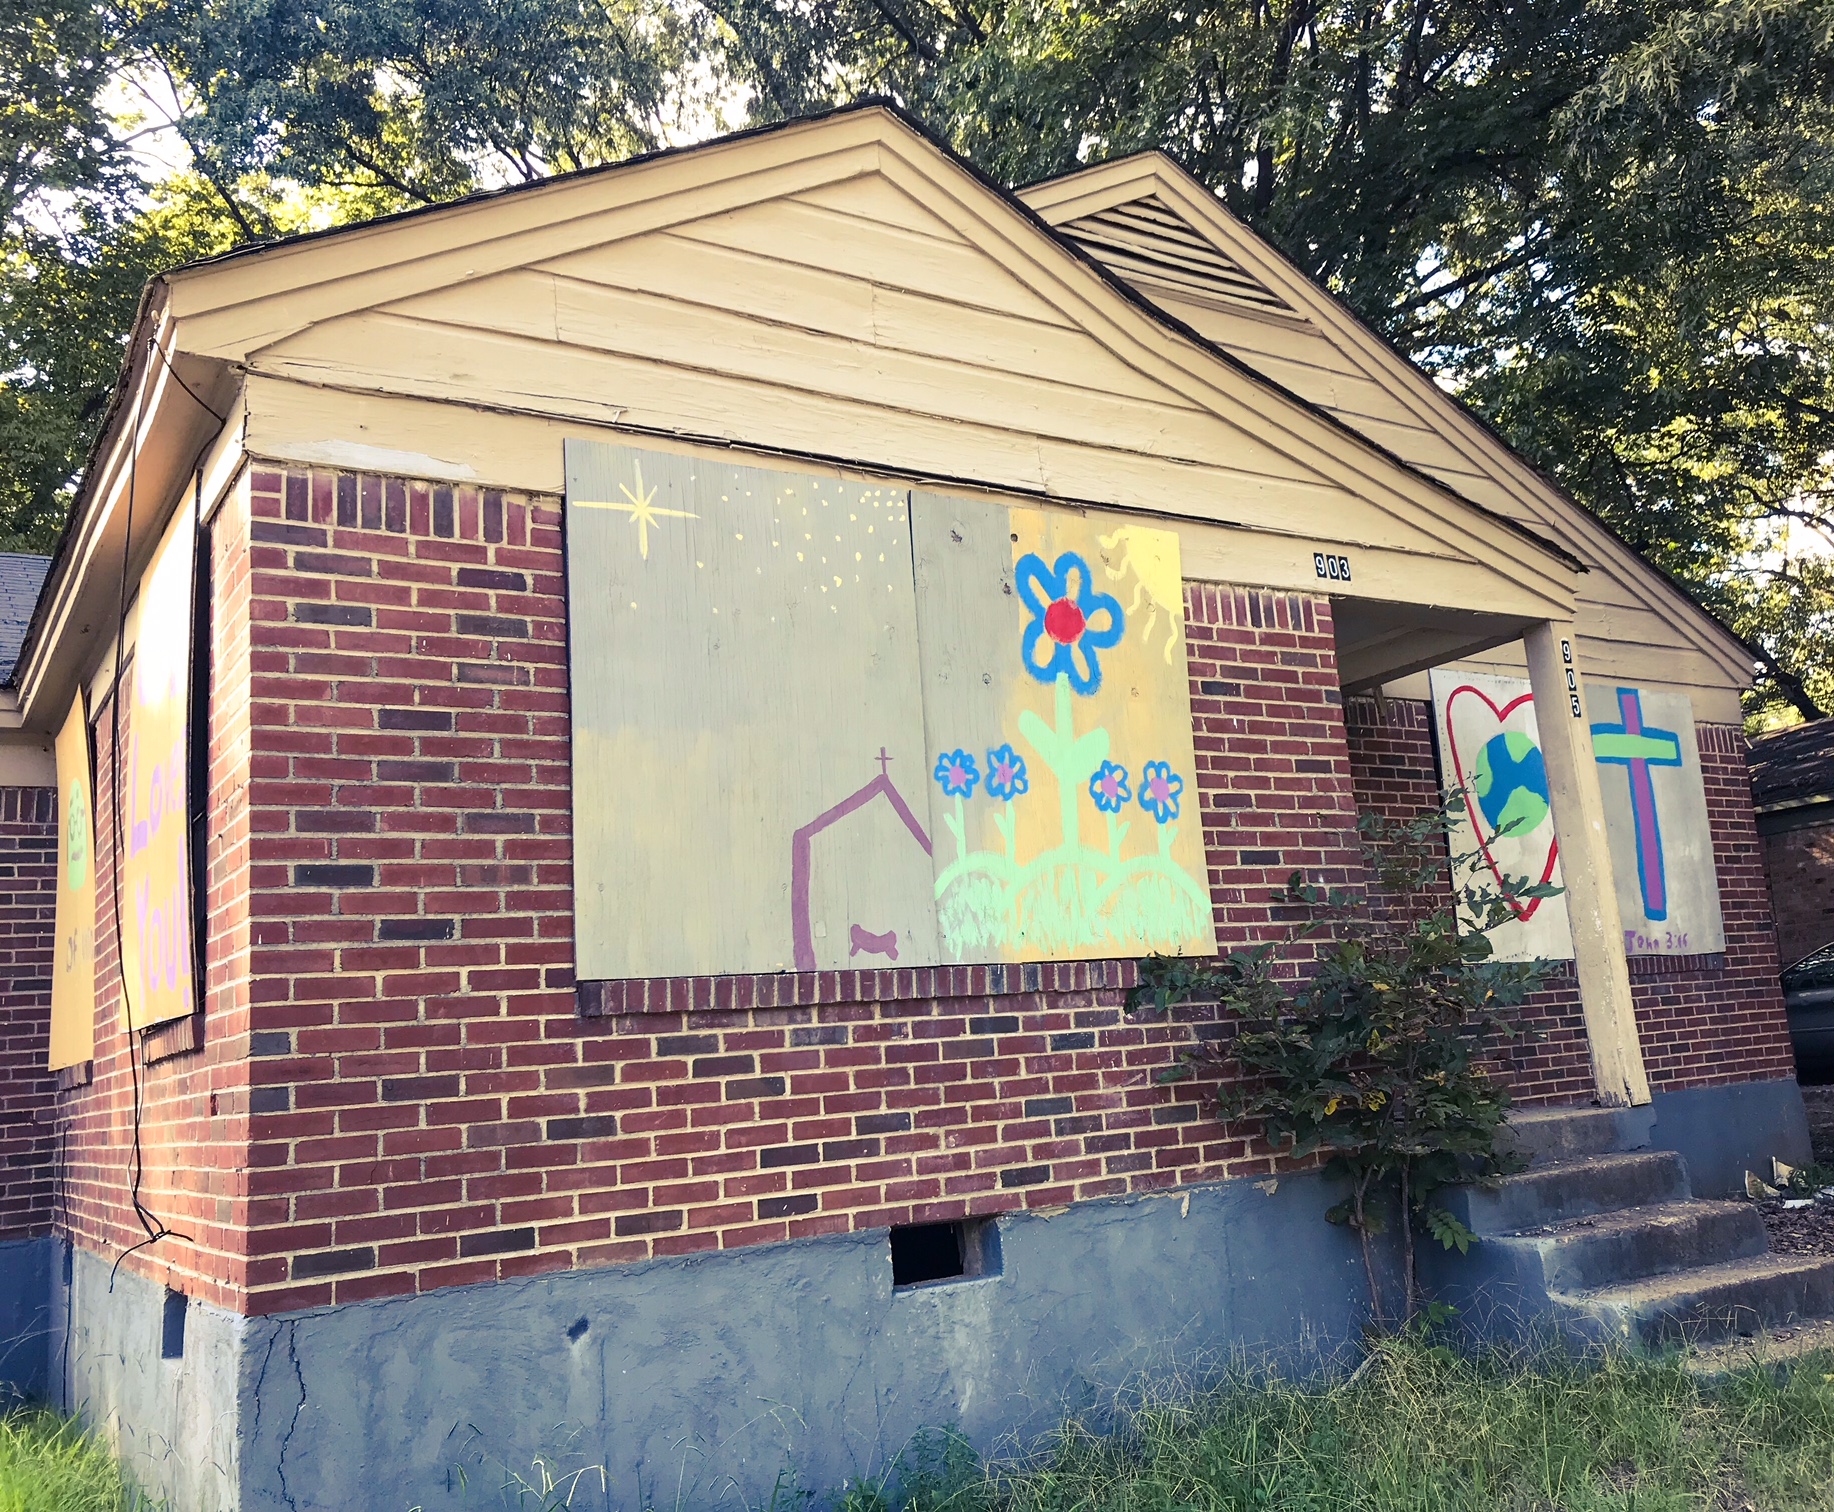 Miembros de la comunidad abordaron una casa destrozada en Mitchell Heights y la pintaron con coloridas ilustraciones. (Cole Bradley)